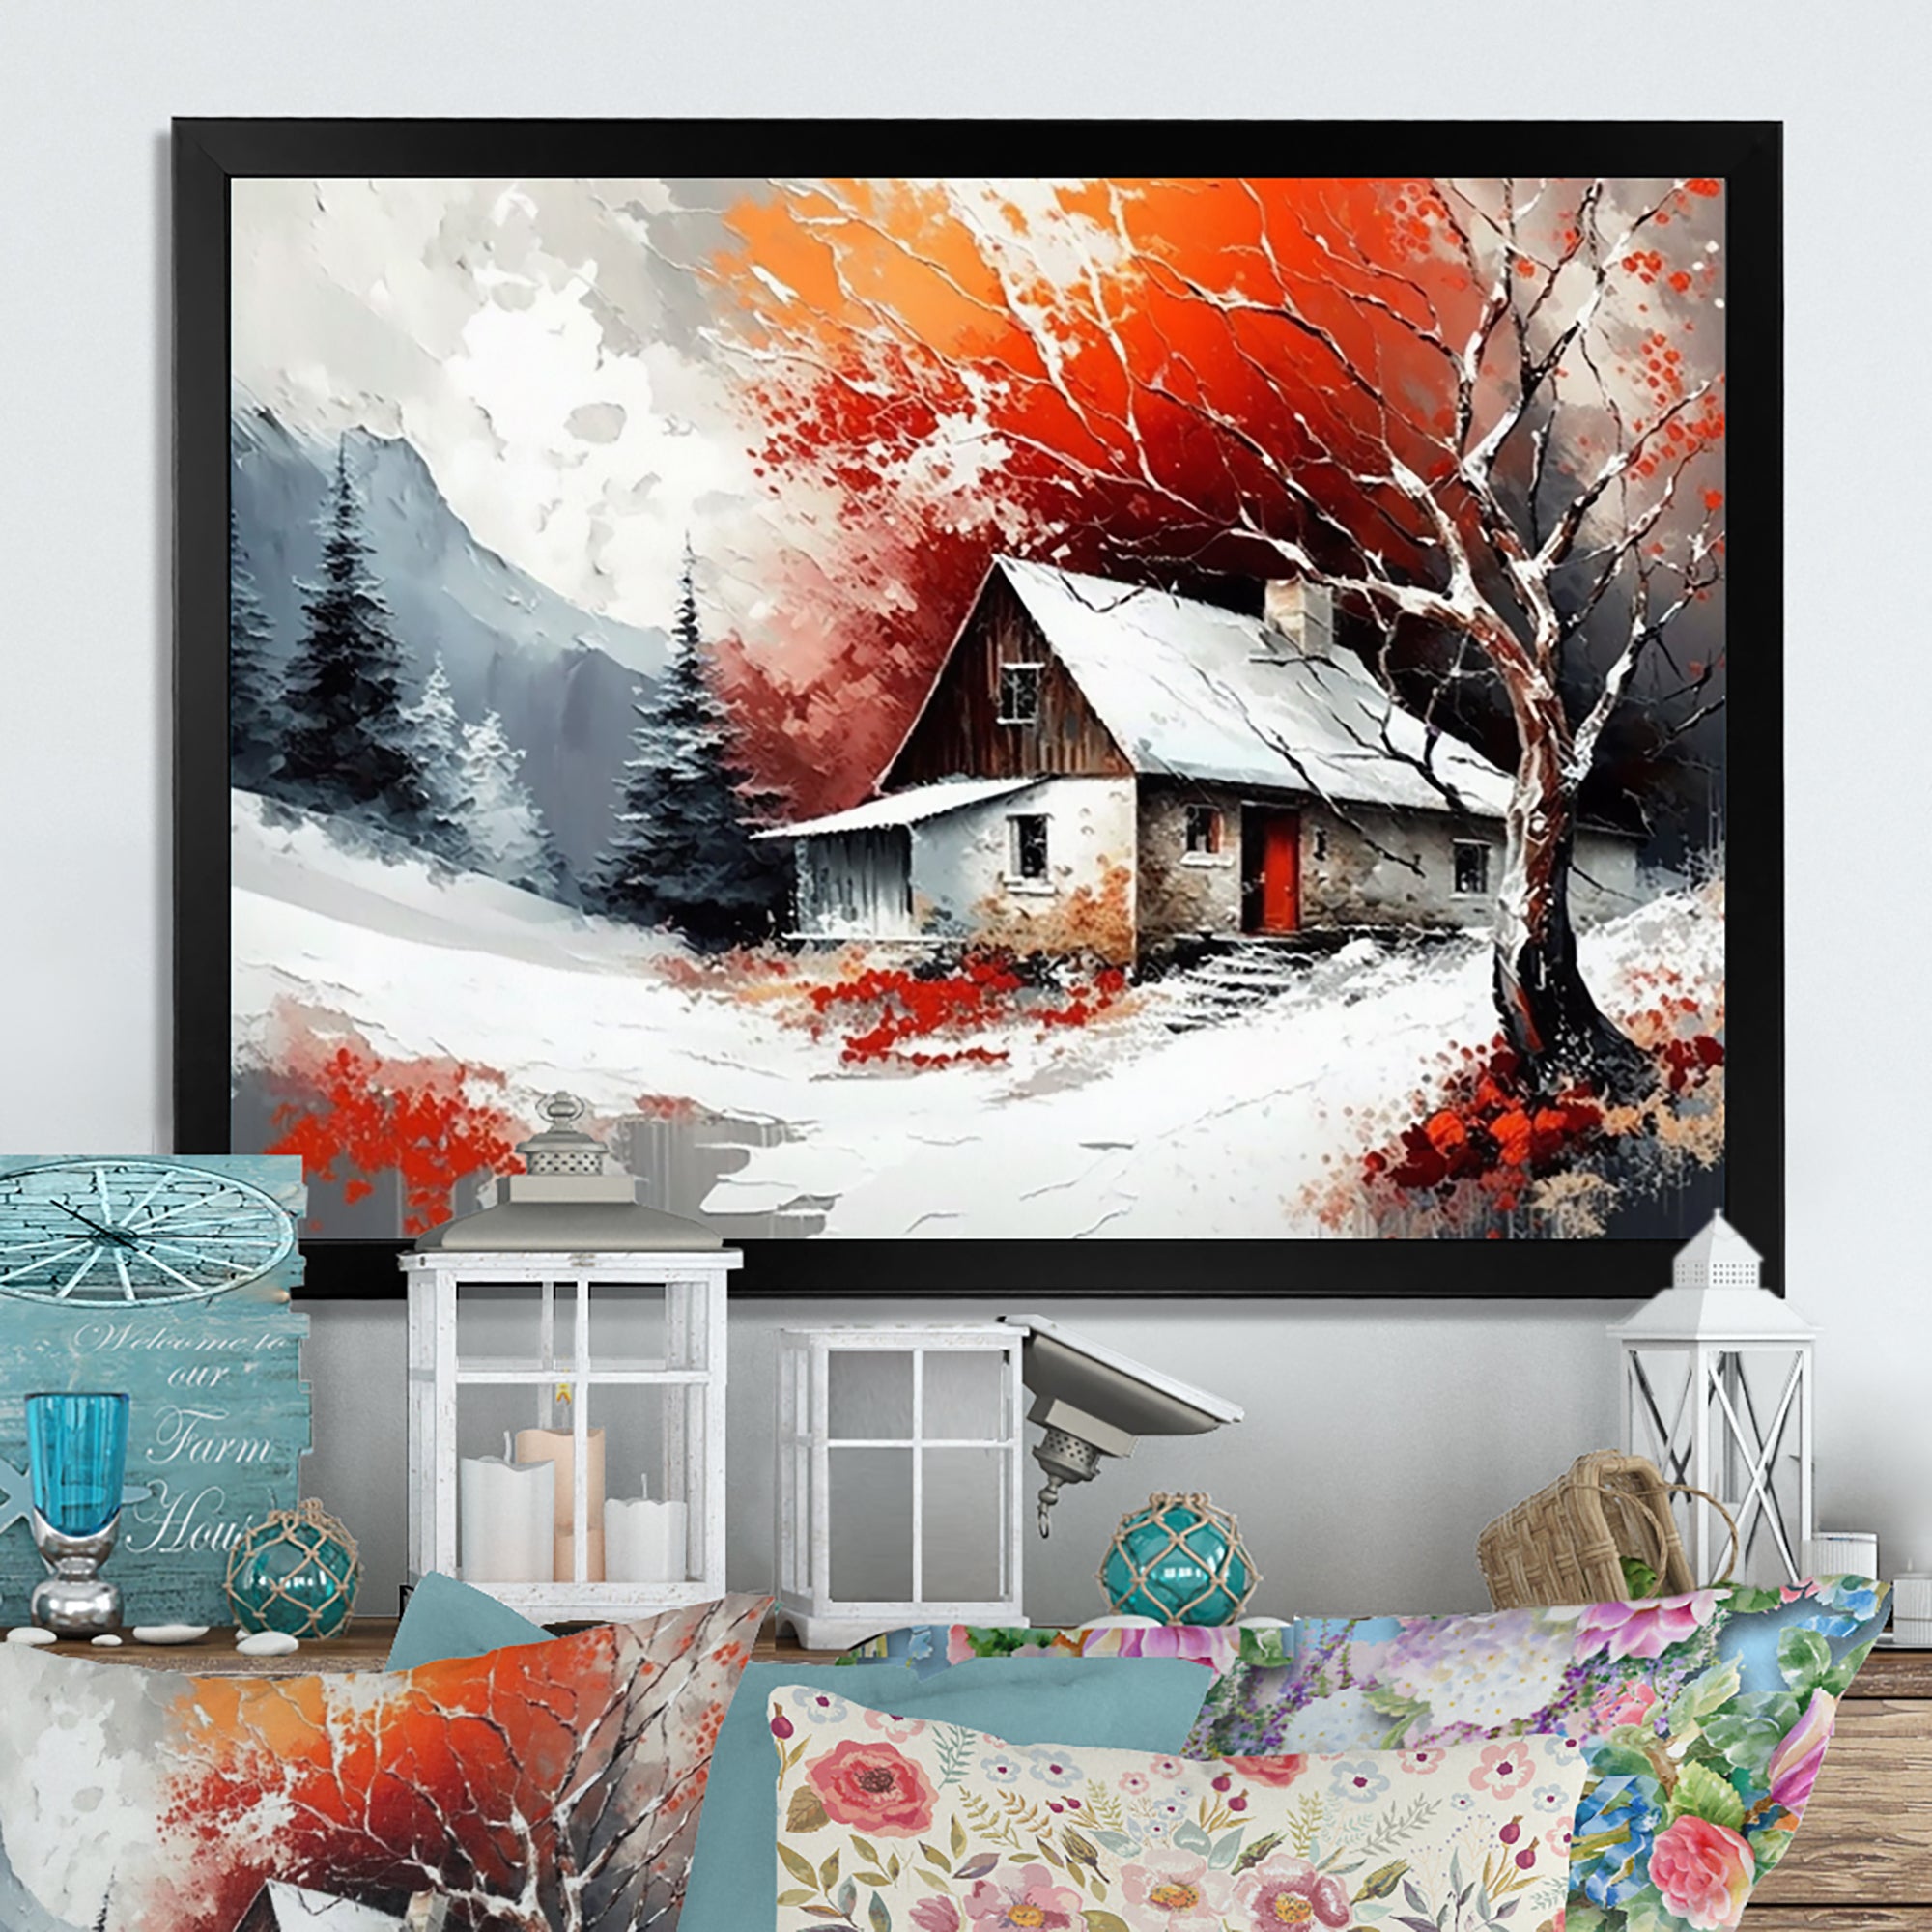 Monochrome Orange Cottage In Winter VII